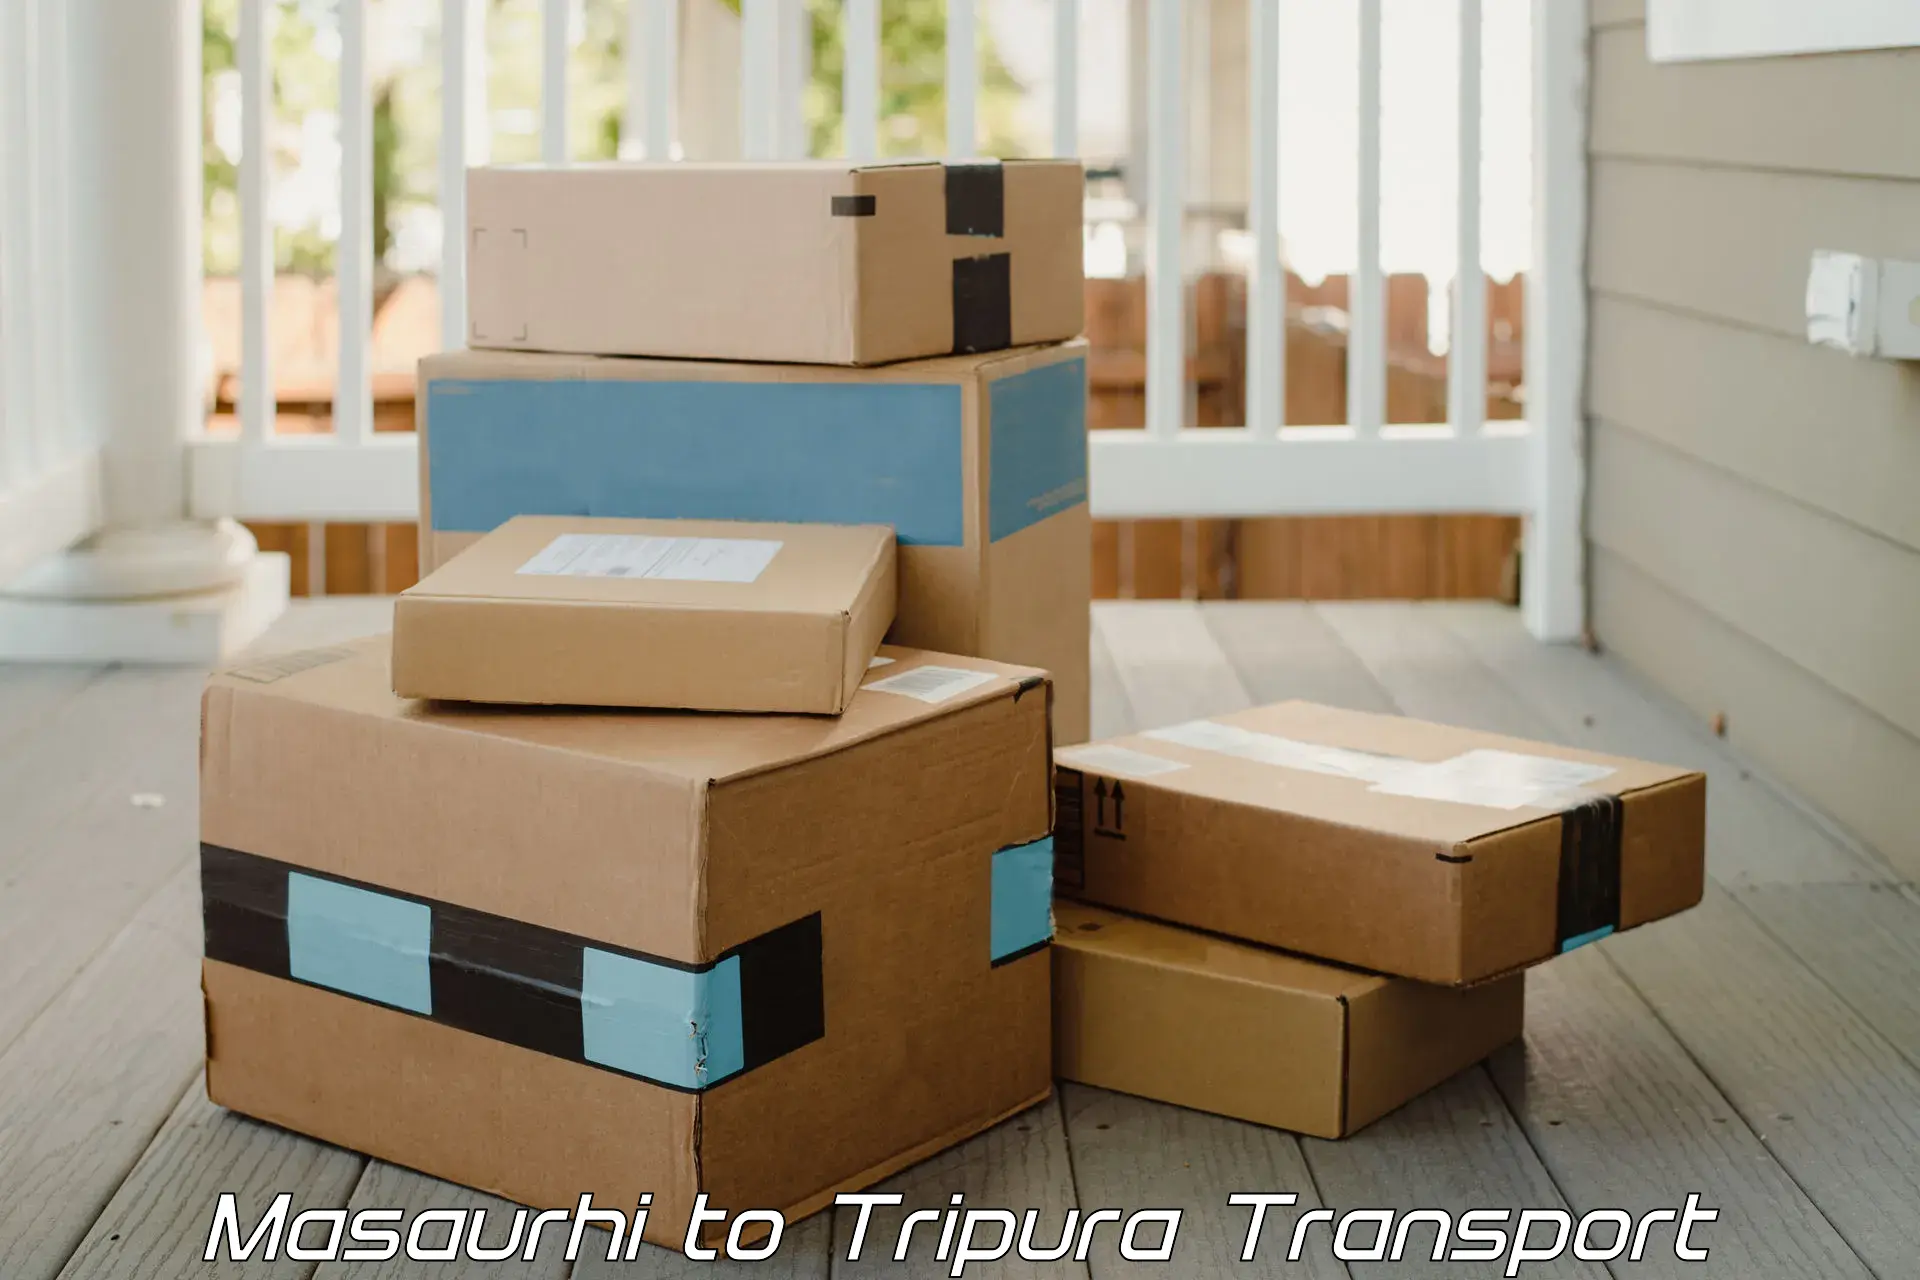 Furniture transport service Masaurhi to Tripura